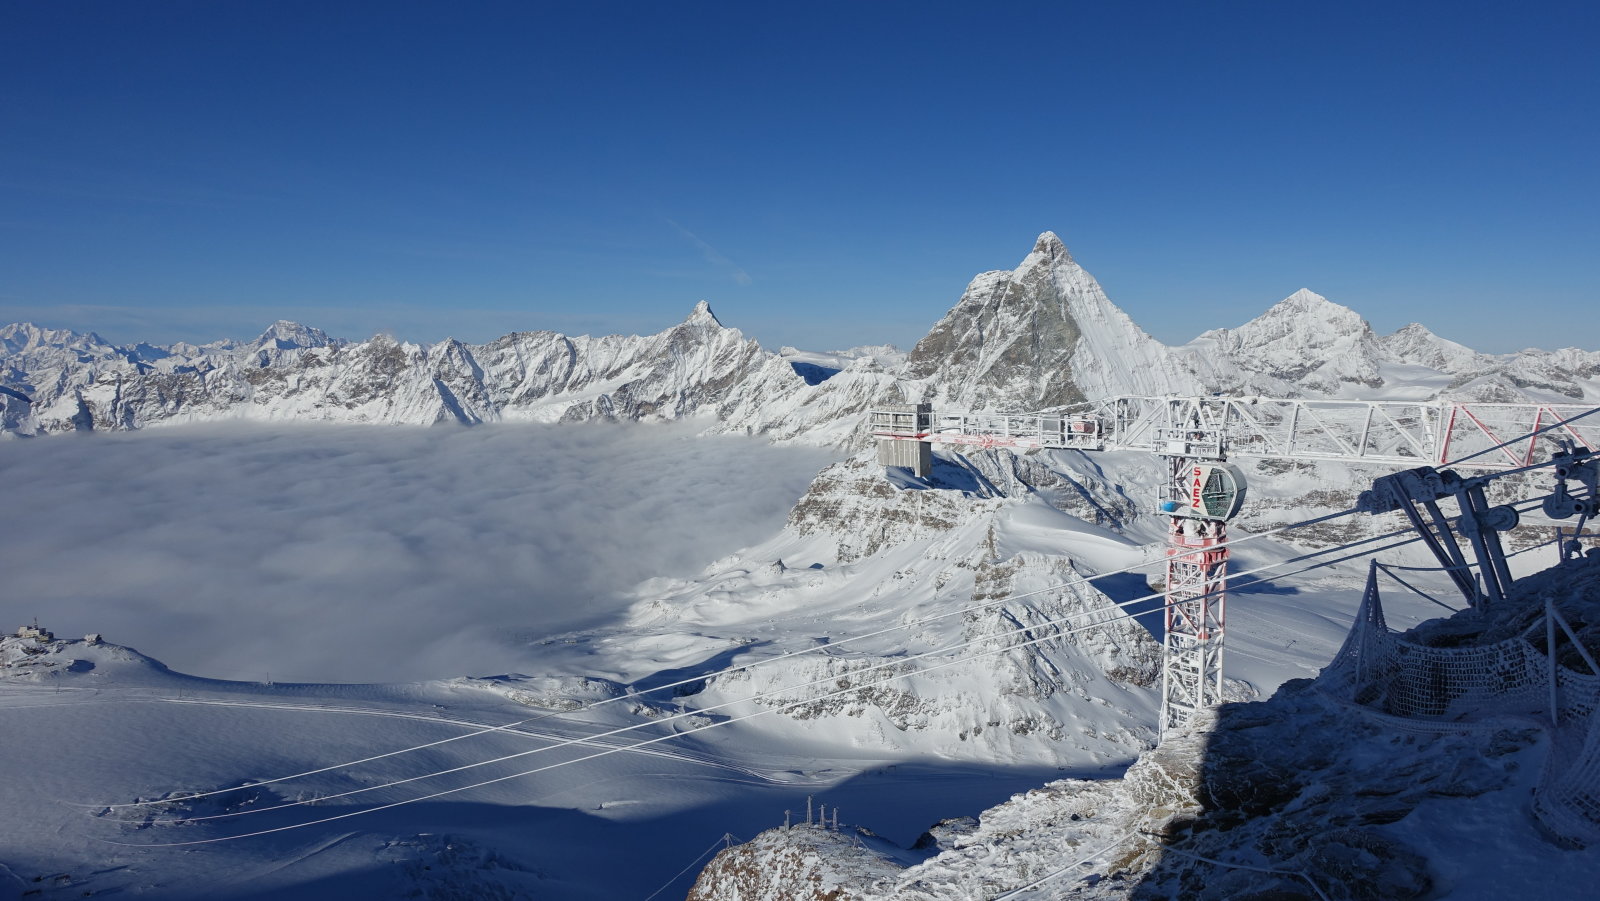 Matterhorn glacier paradise kilátó, baloldalon az olasz rész felhőtakaróban